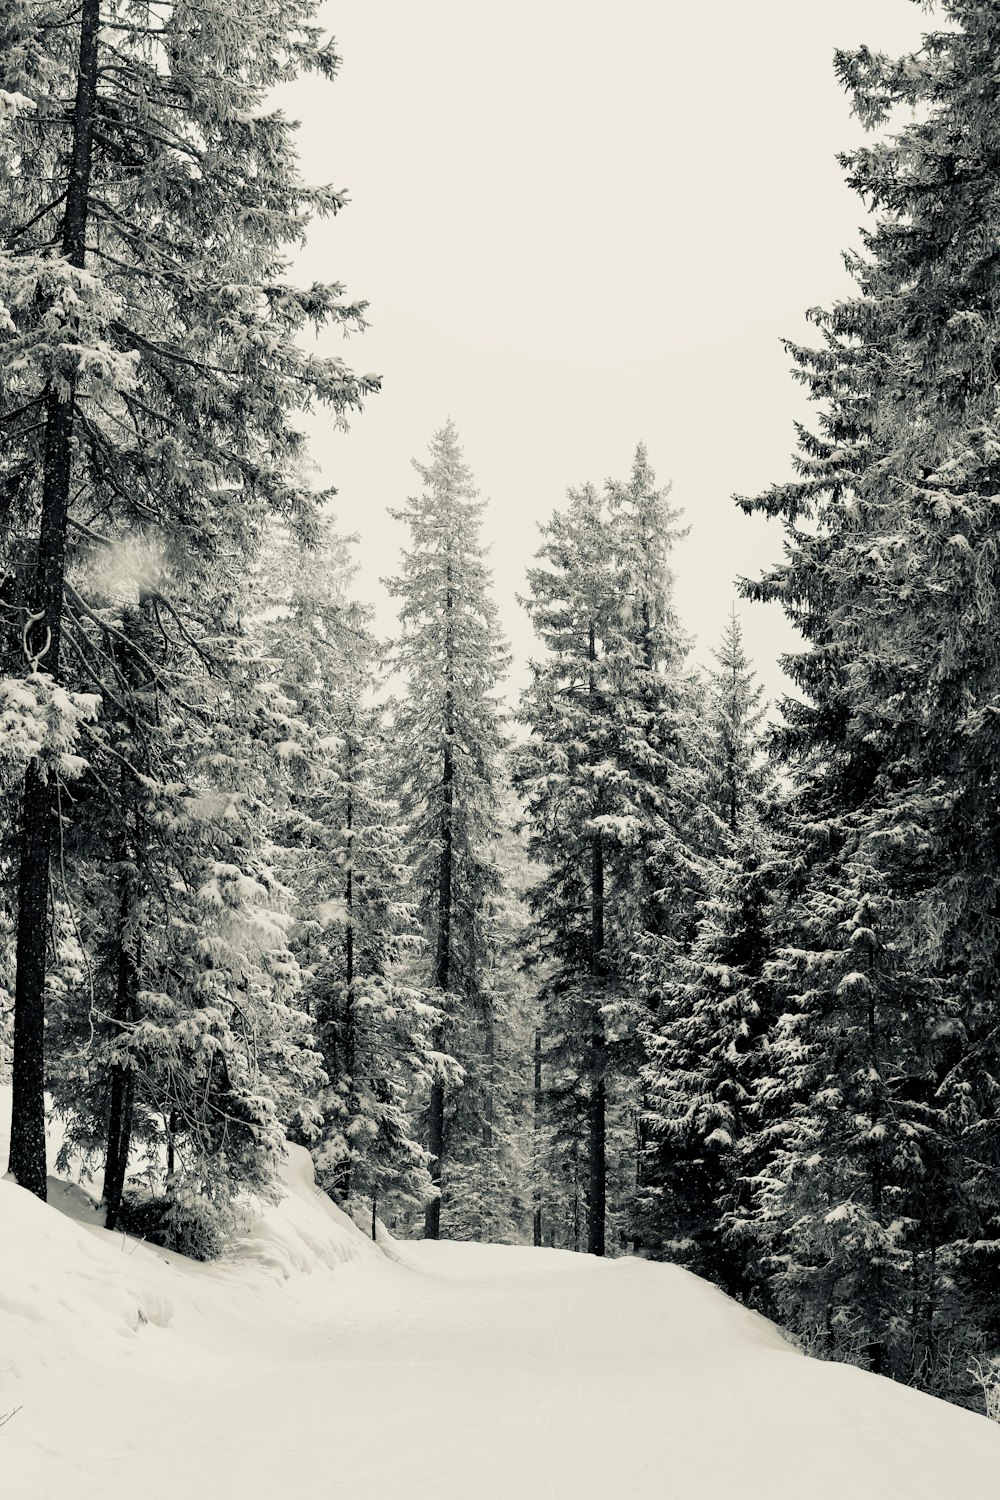 Photo en niveaux de gris de neige et d’arbres